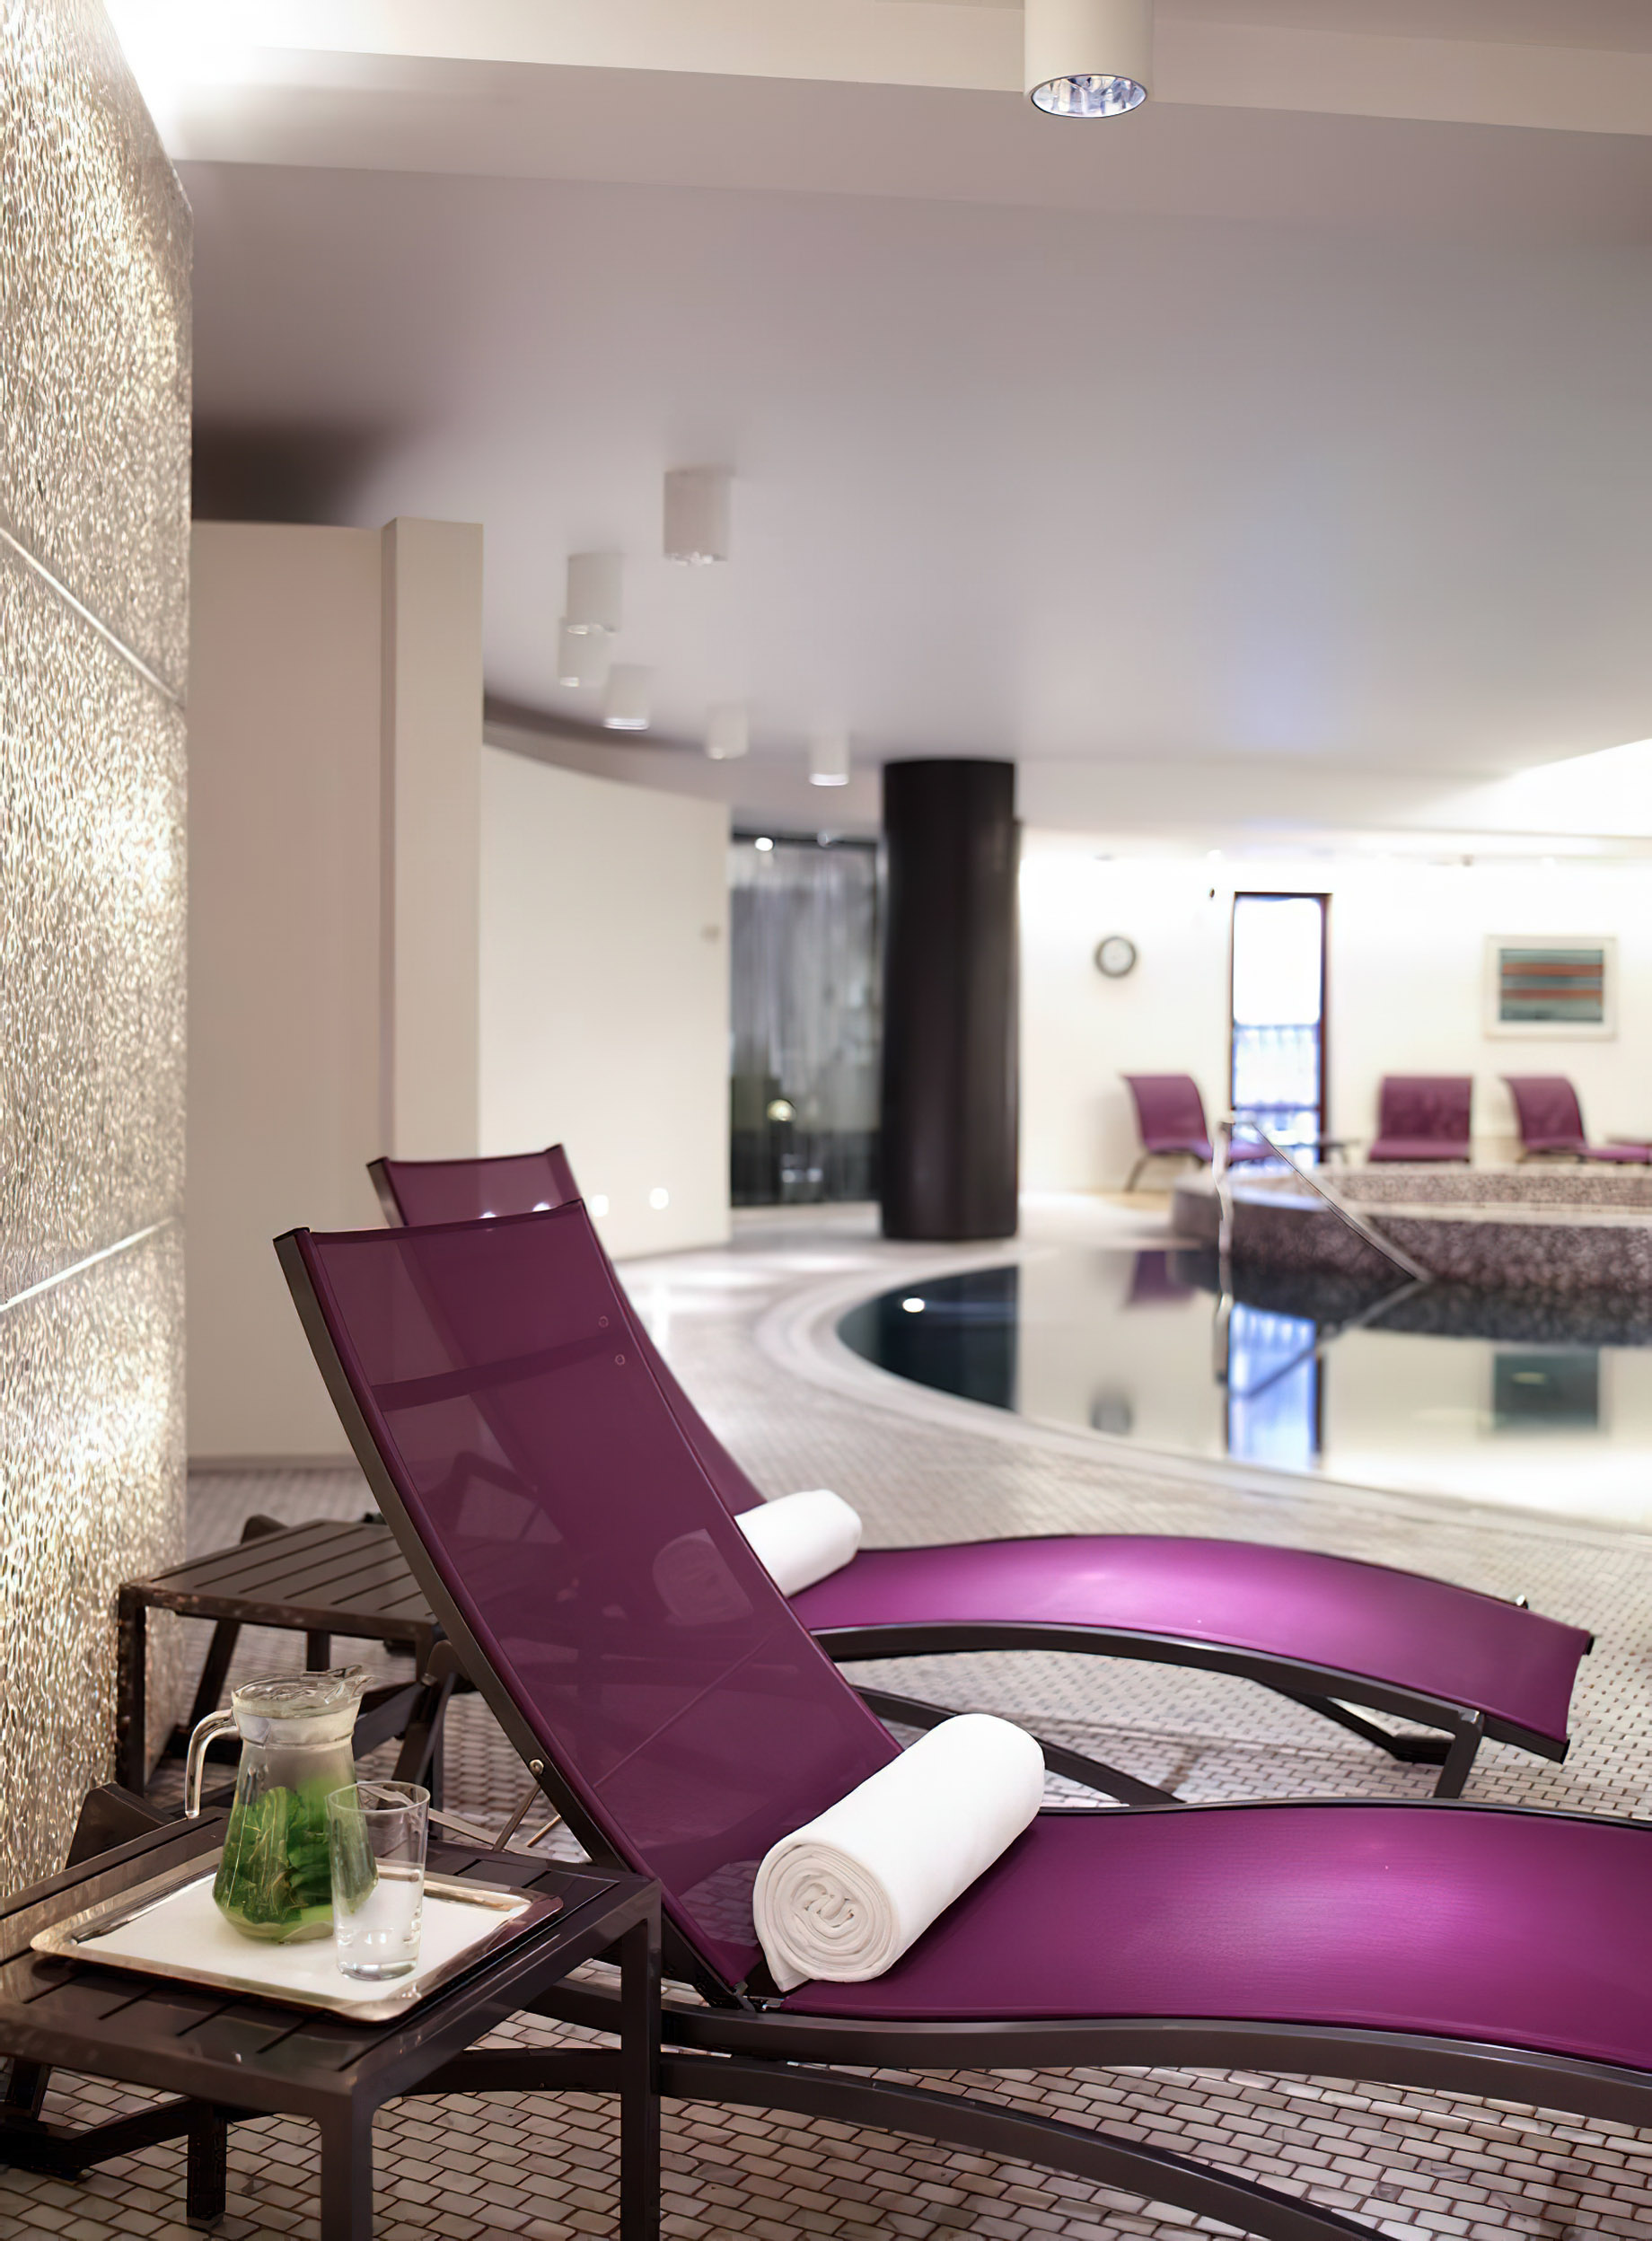 Ararat Park Hyatt Moscow Hotel – Moscow, Russia – Spa & Health Club Pool Deck